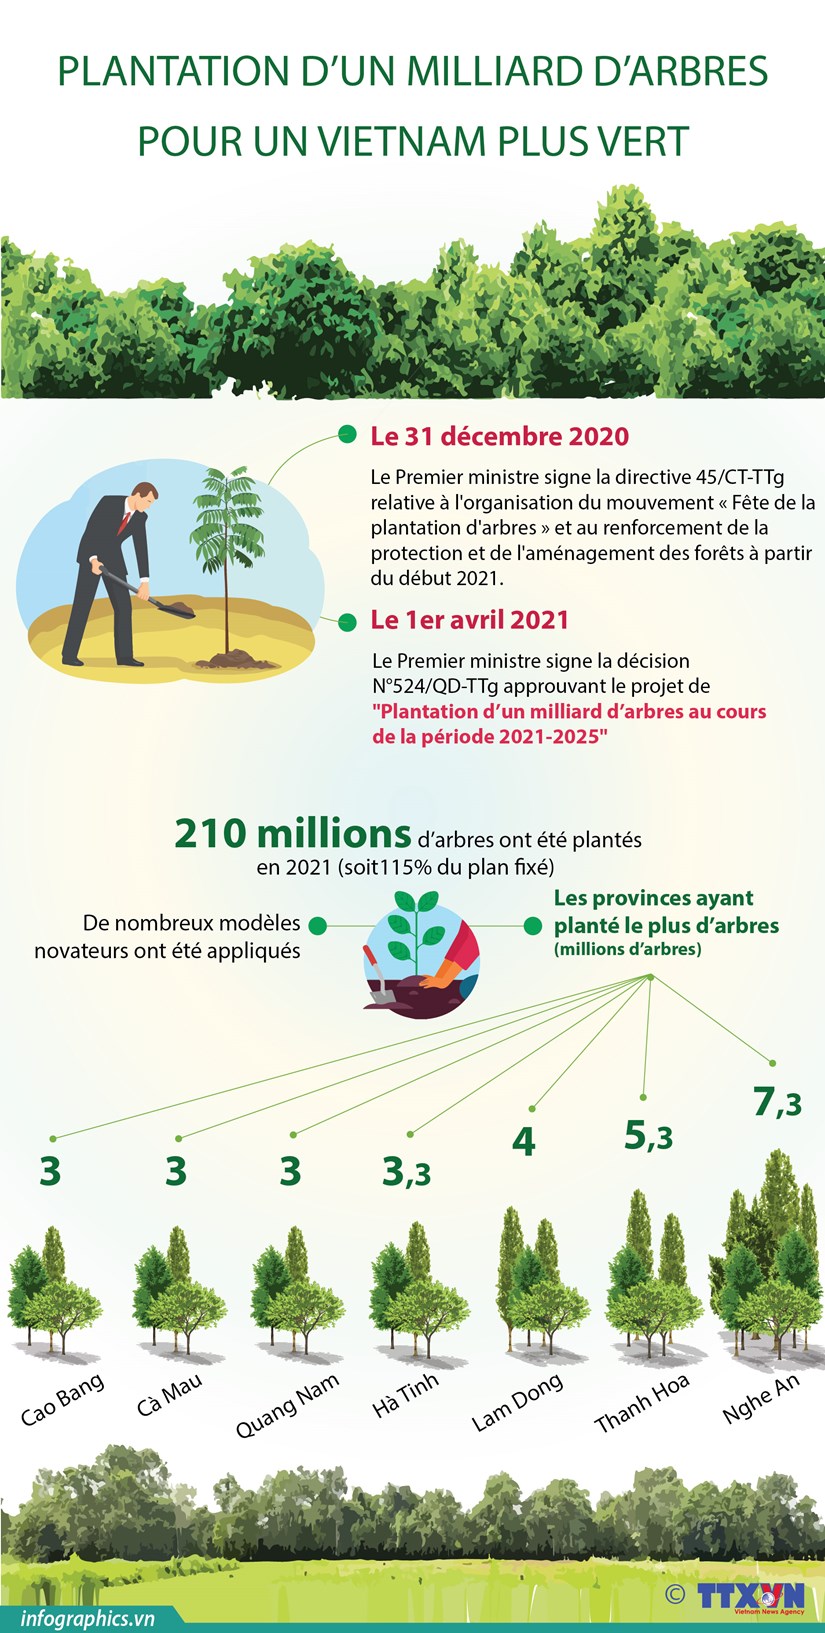 Plantation d’un milliard d’arbres pour un vietnam plus vert hinh anh 1